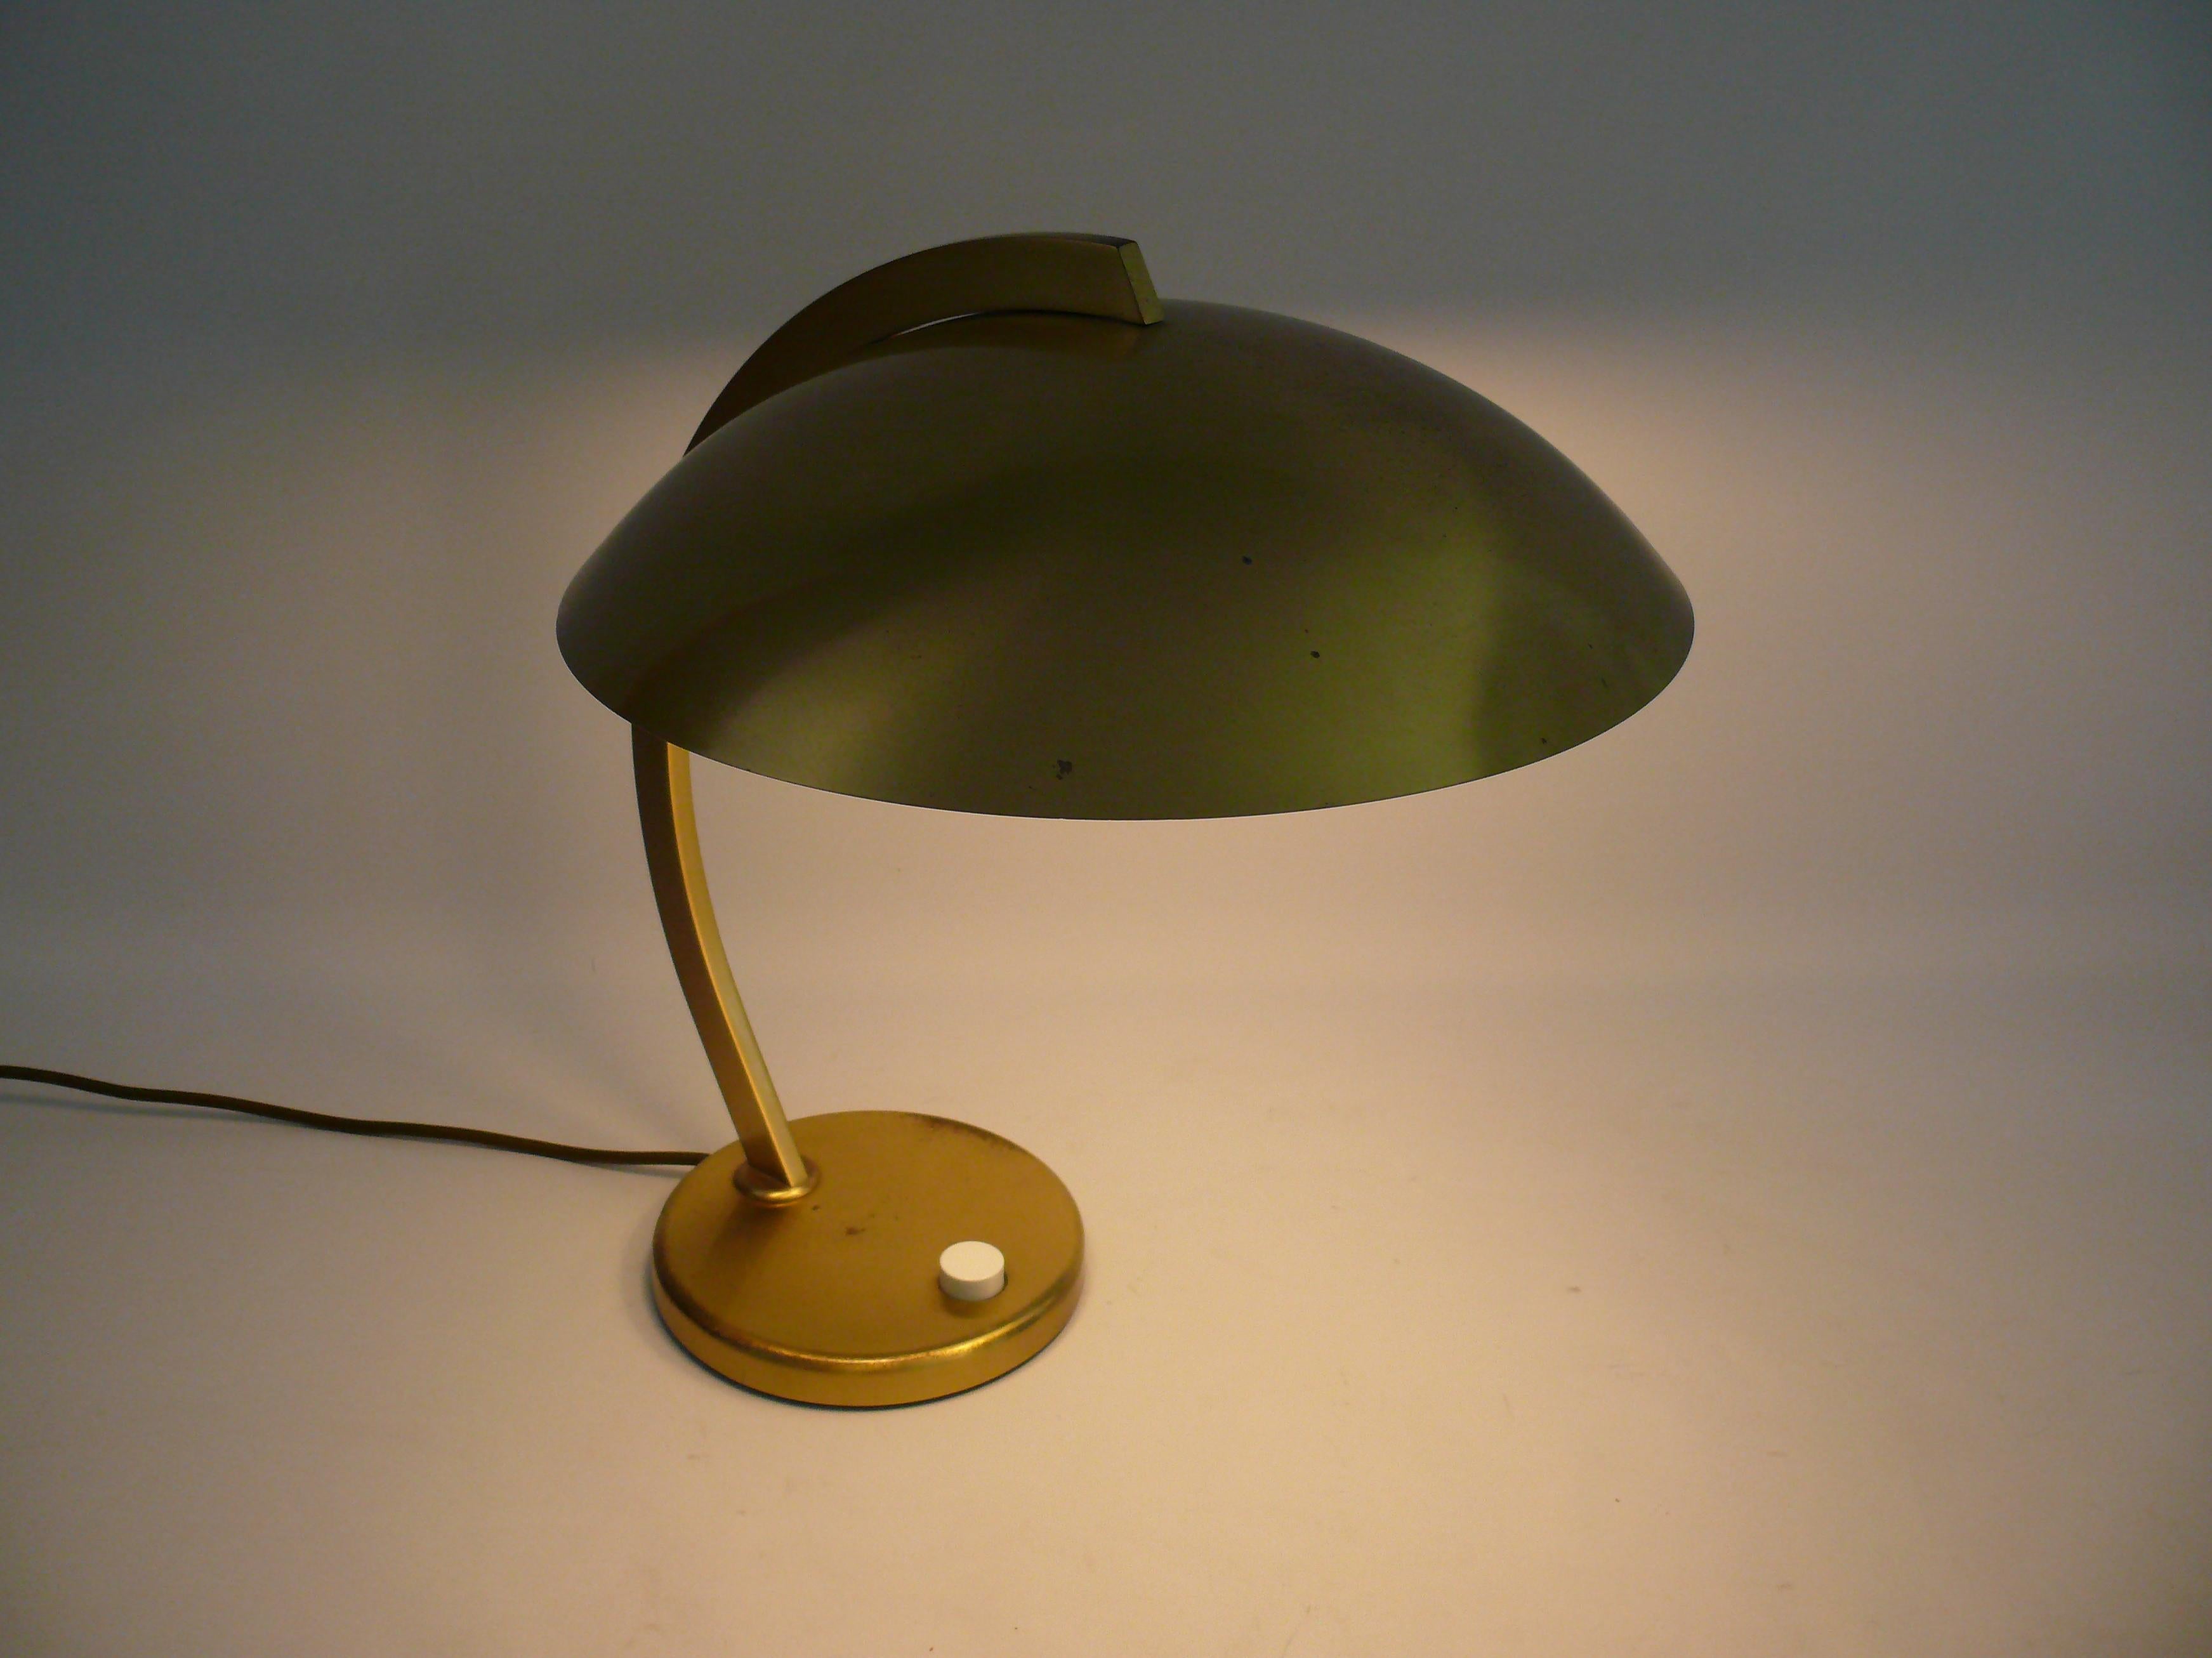 Merveilleuse lampe dans le style Bauhaus des années 1950 : Grandes lampes de table de la société Joseph Brumberg Sundern (JBS) d'Allemagne de l'Ouest (Sauerland). Cette lampe est également souvent attribuée à Egon Hillebrand. La lampe très solide